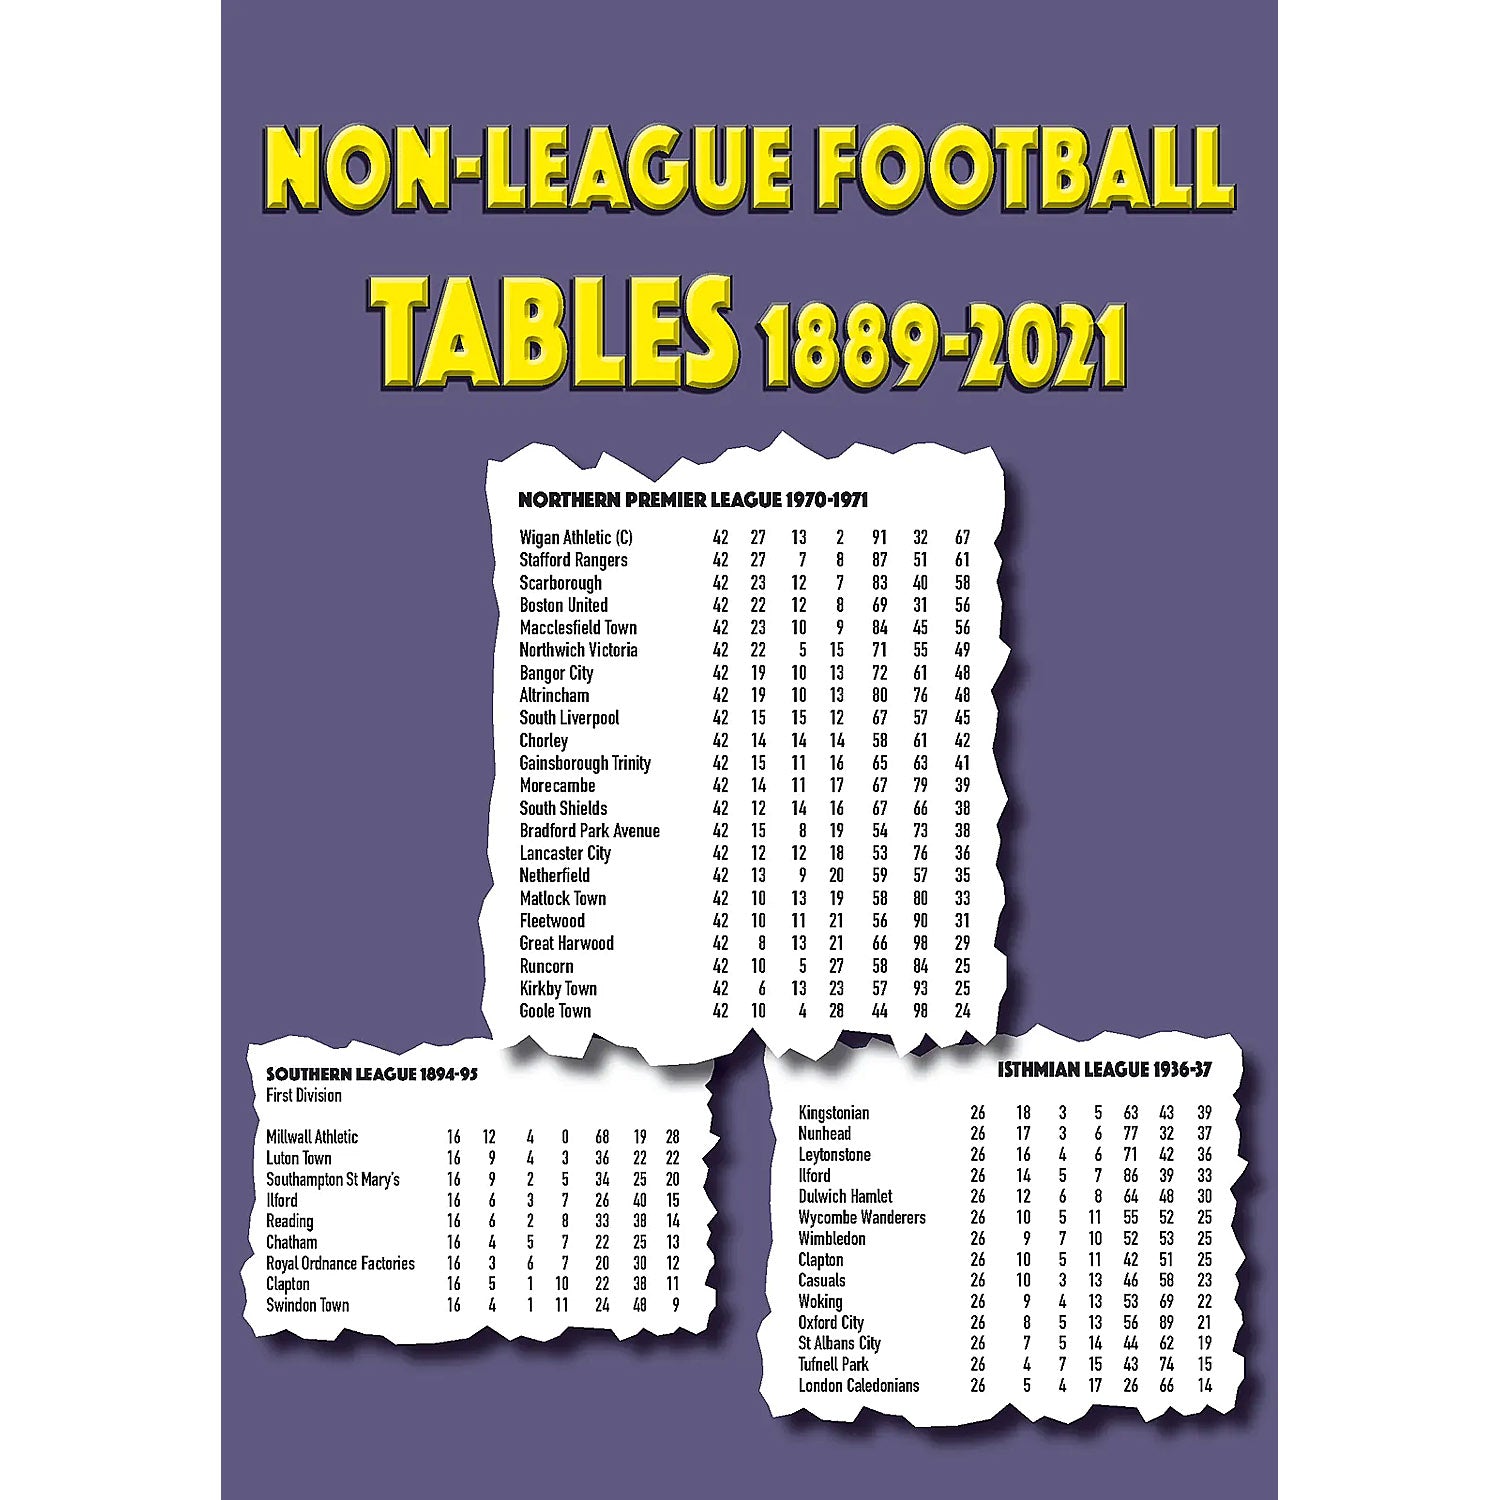 Non-League Football Tables 1889-2021